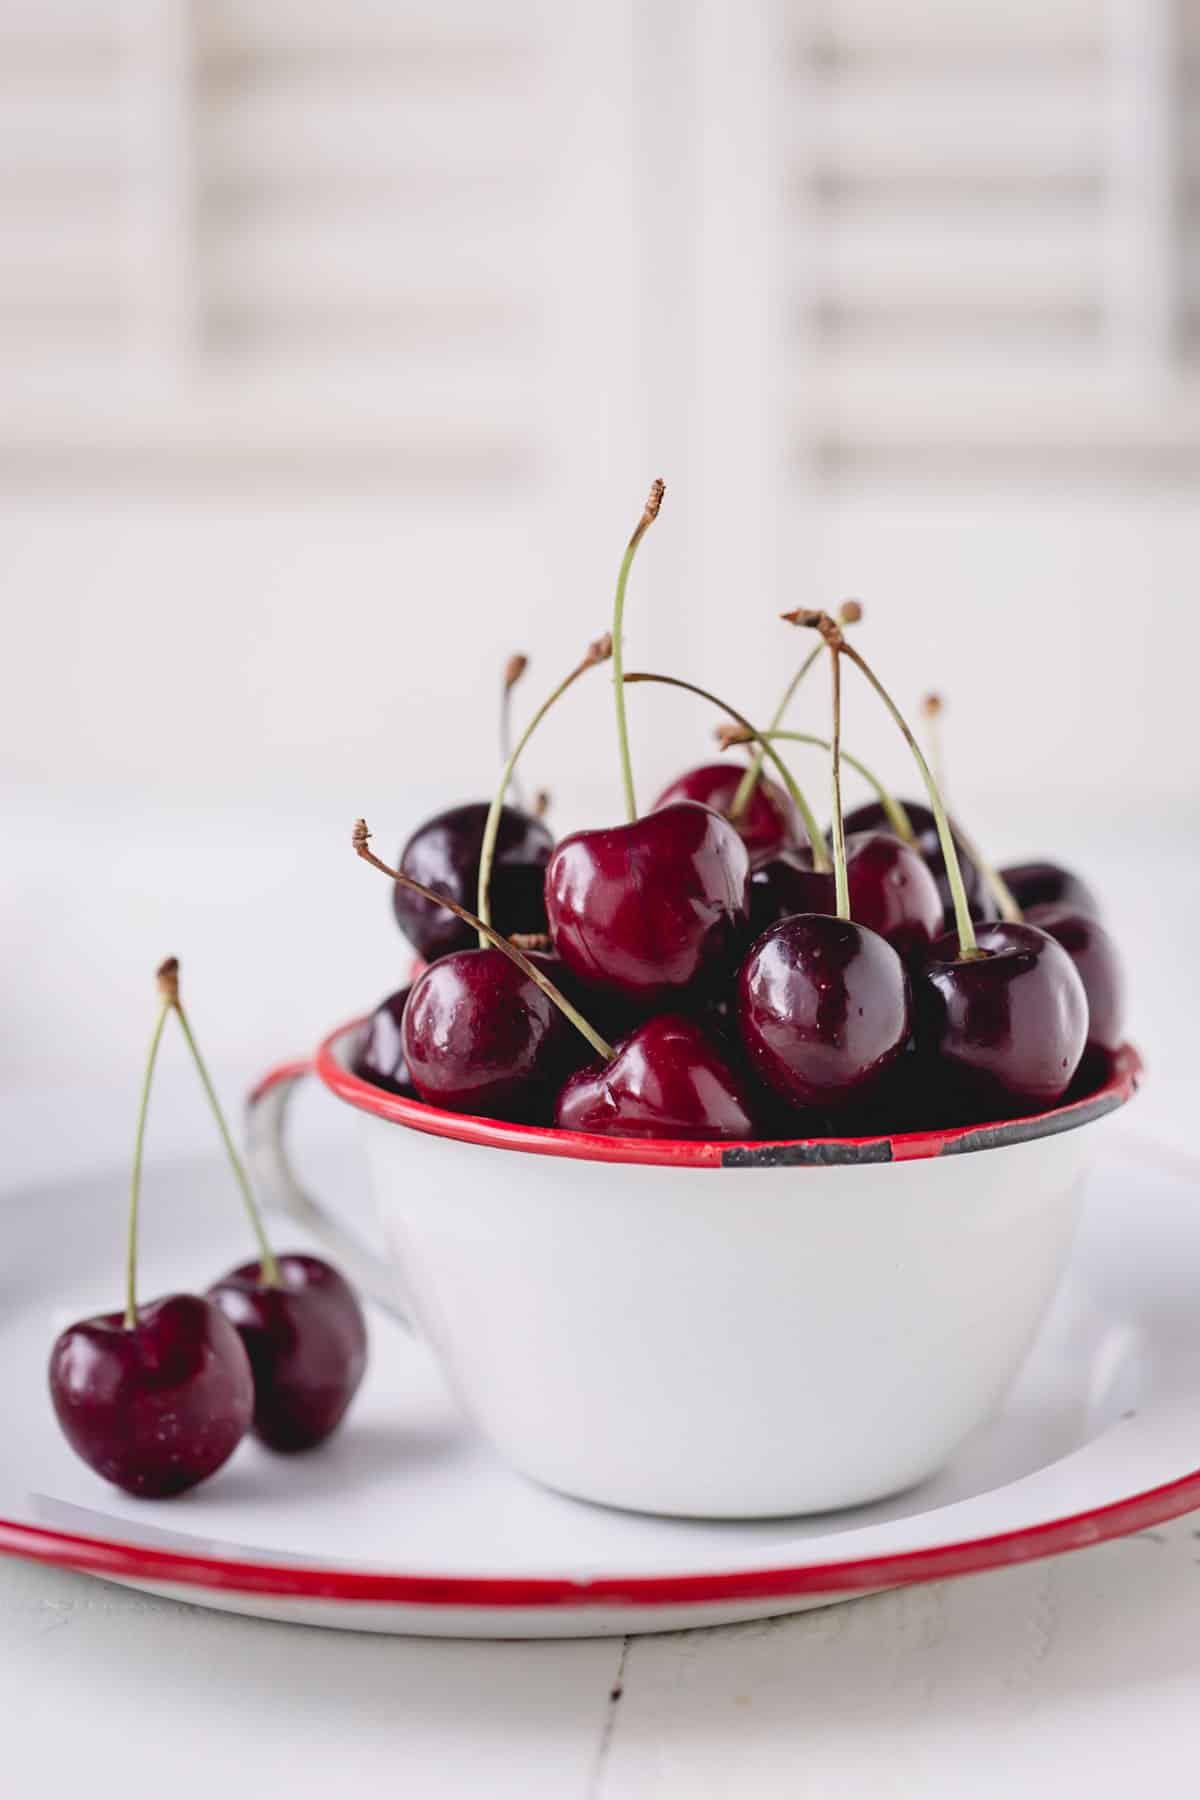 A bowl of dark sweet cherries.